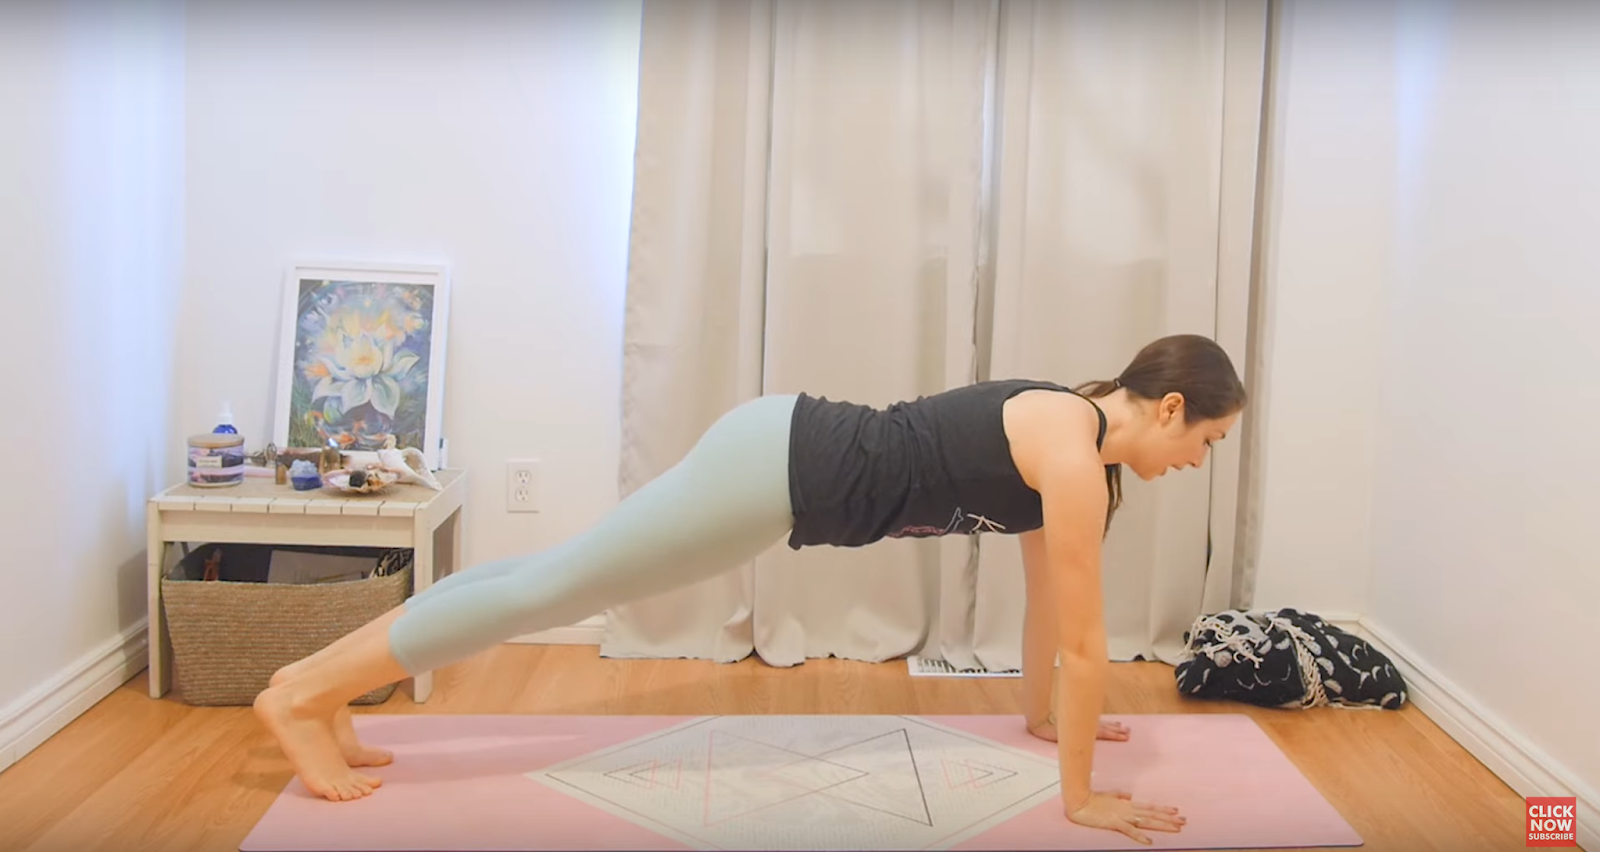 Powerful Yoga Poses To Get Toned And Chiseled Abs | HerZindagi